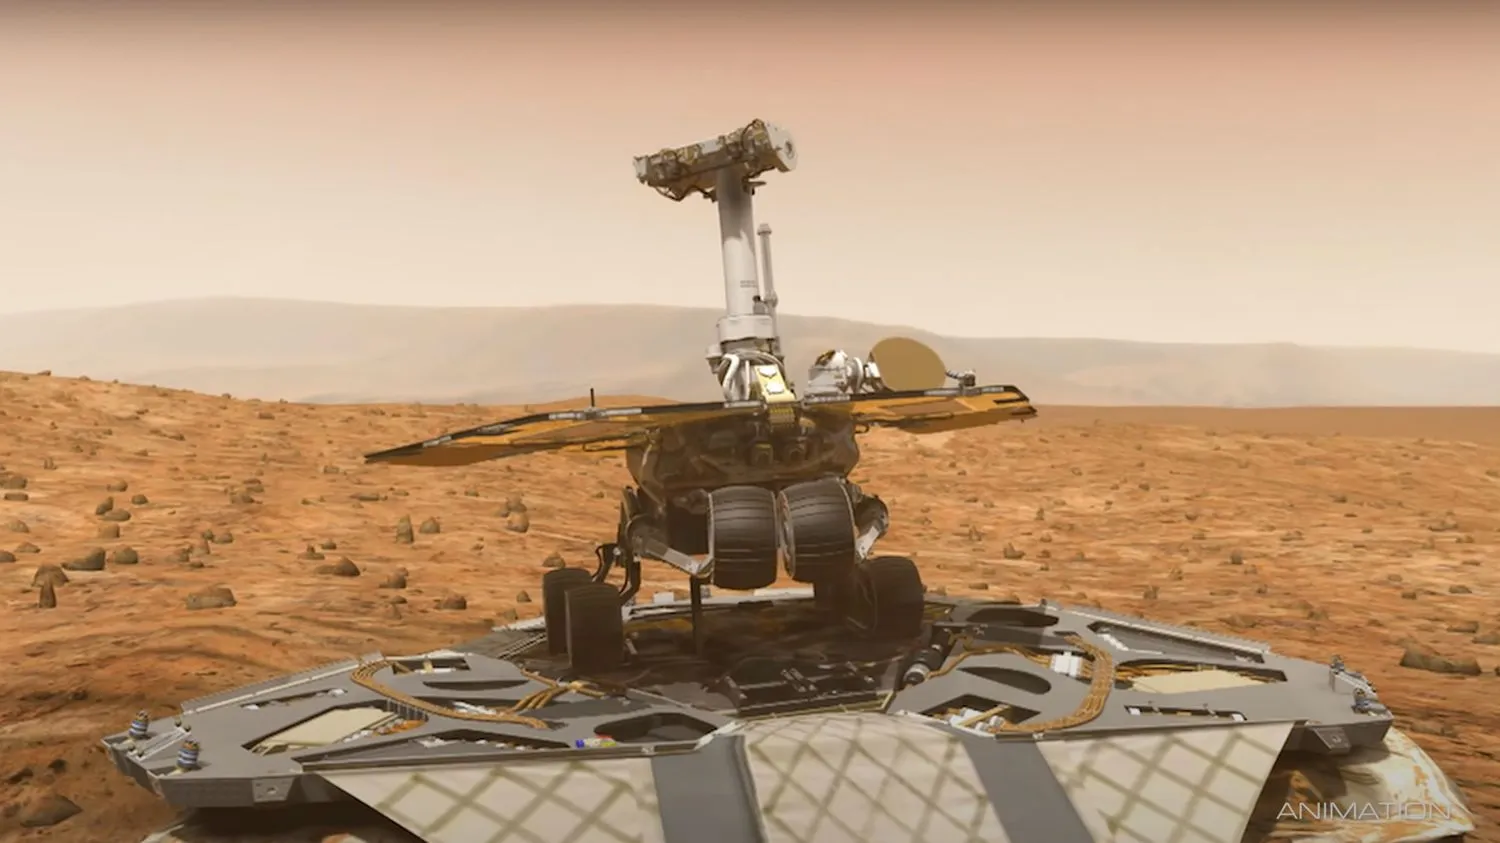 Künstlerische Darstellung eines sechsrädrigen Rovers auf der Marsoberfläche mit einer felsigen, rötlichen Landschaft im Hintergrund